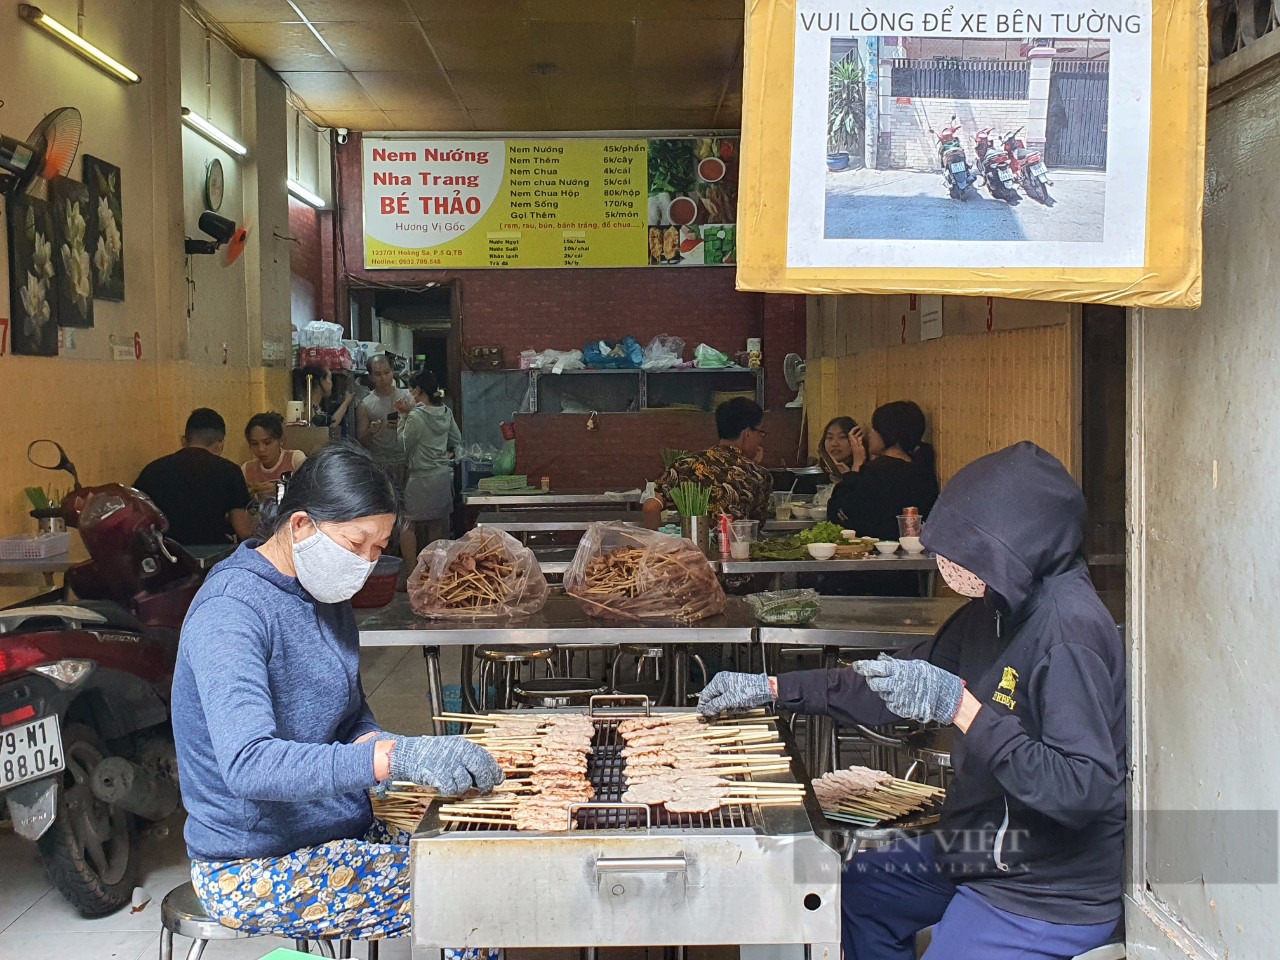 Sài Gòn quán: Nem nướng Nha Trang chính gốc ở Sài Gòn, ăn ở đâu? - 3